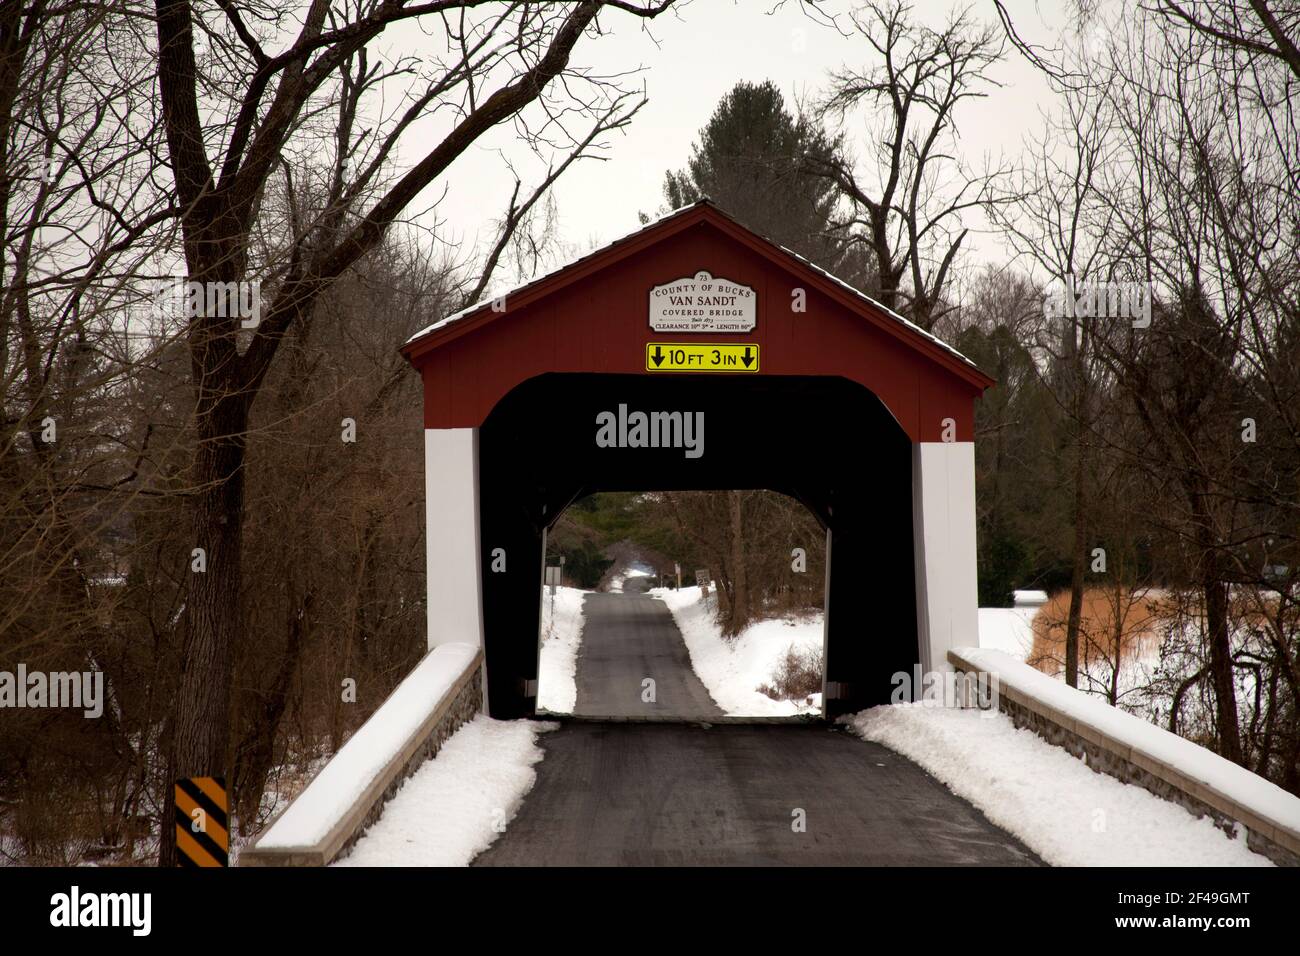 Van Sandt Covered Bridge, Condado de Bucks, Pensilvania, Estados Unidos. Foto de stock